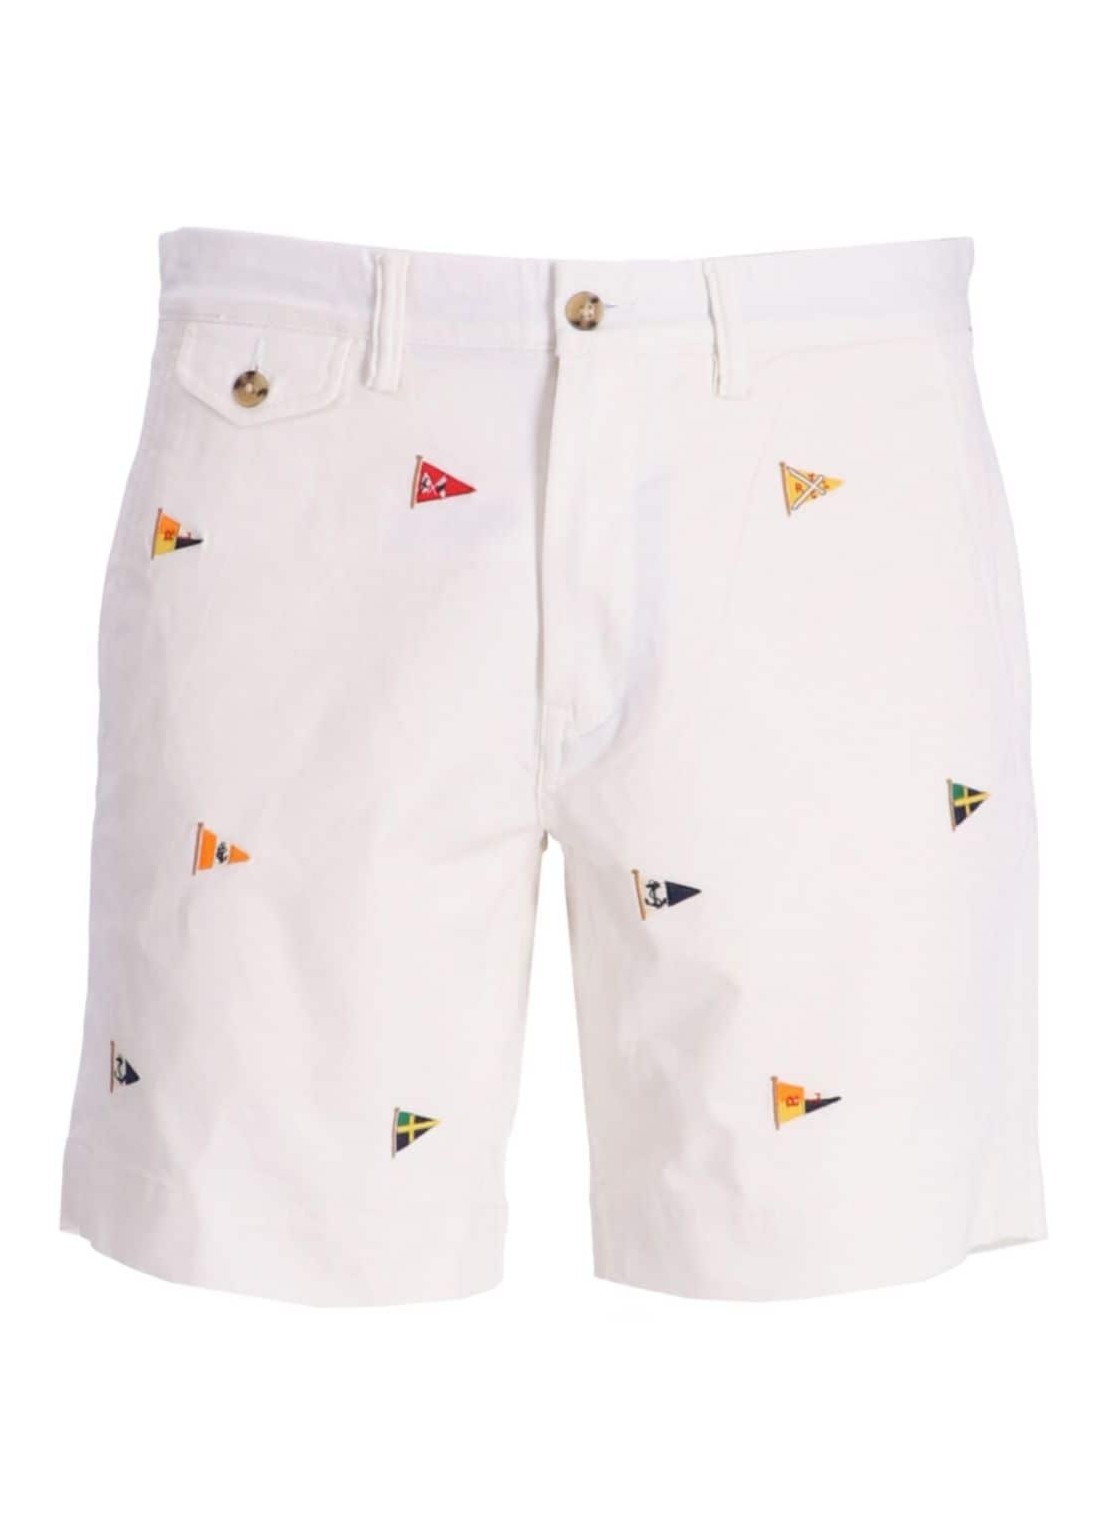 Pantalon corto polo ralph lauren short pant man stfbedford9s-flat front 710928932001 deckwash white 